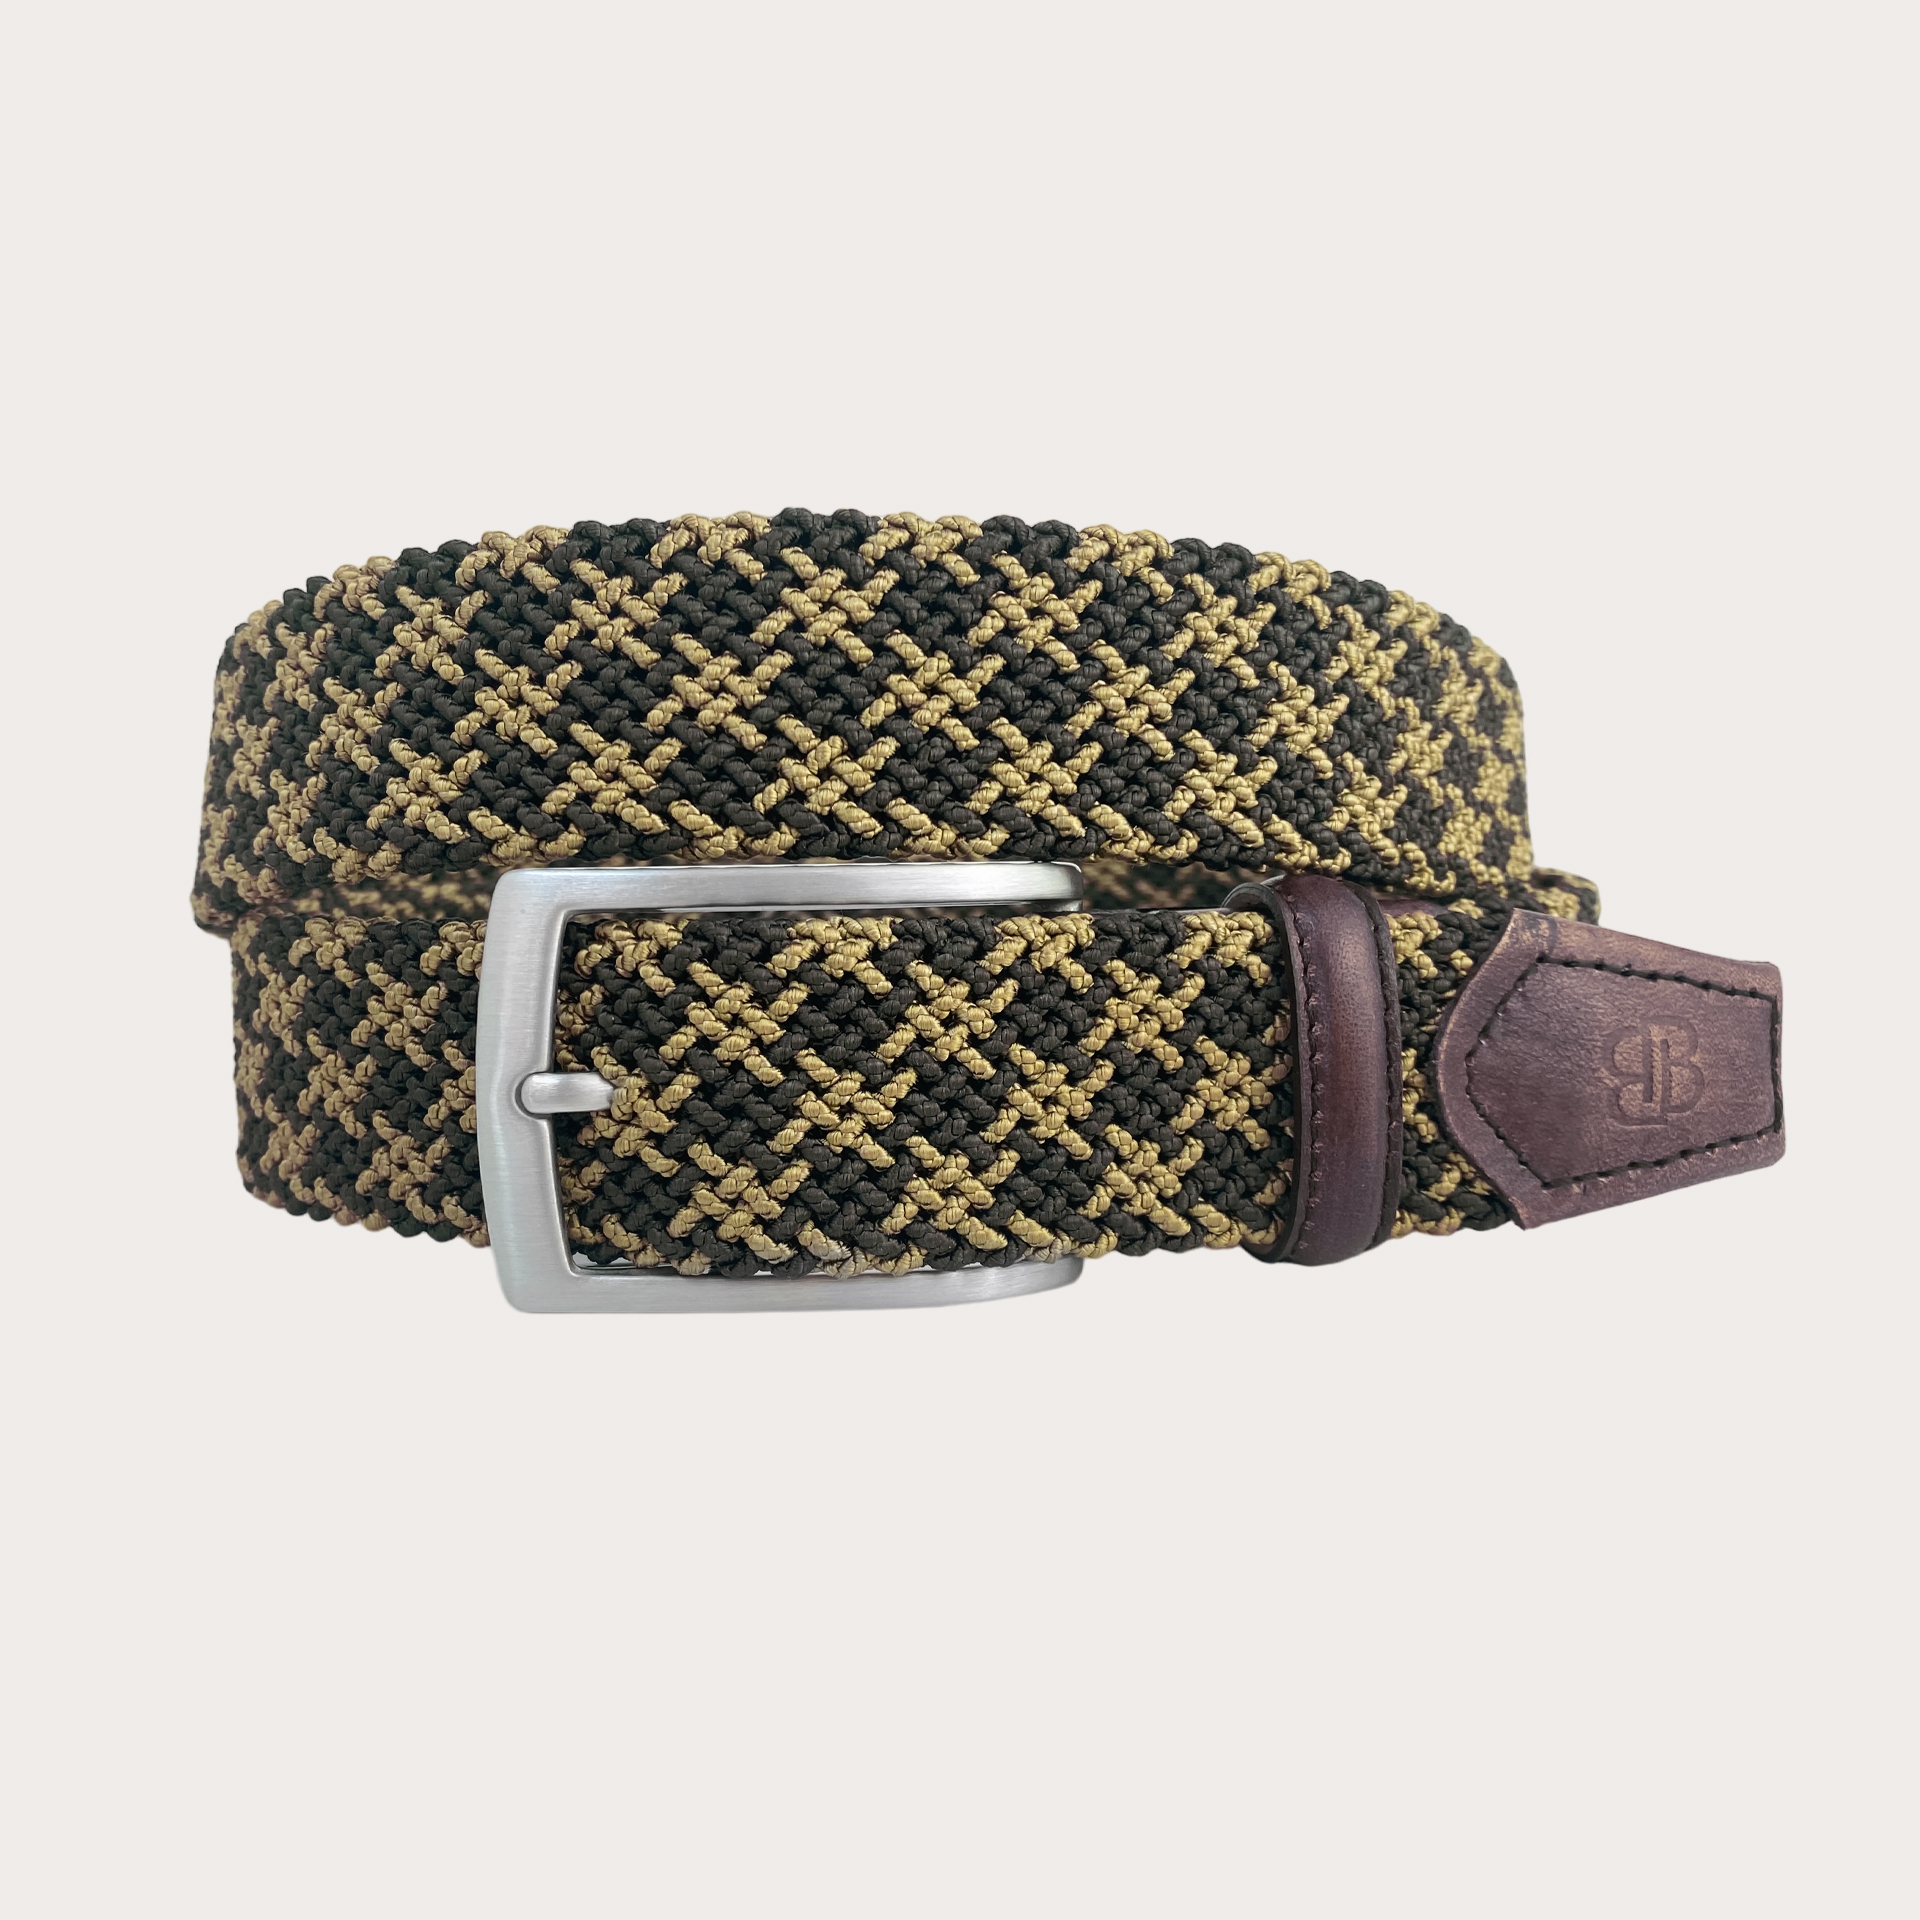 BRUCLE Exclusivo cinturón elástico trenzado bicolor marrón y dorado, con cuero coloreado a mano y hebilla libre de níquel